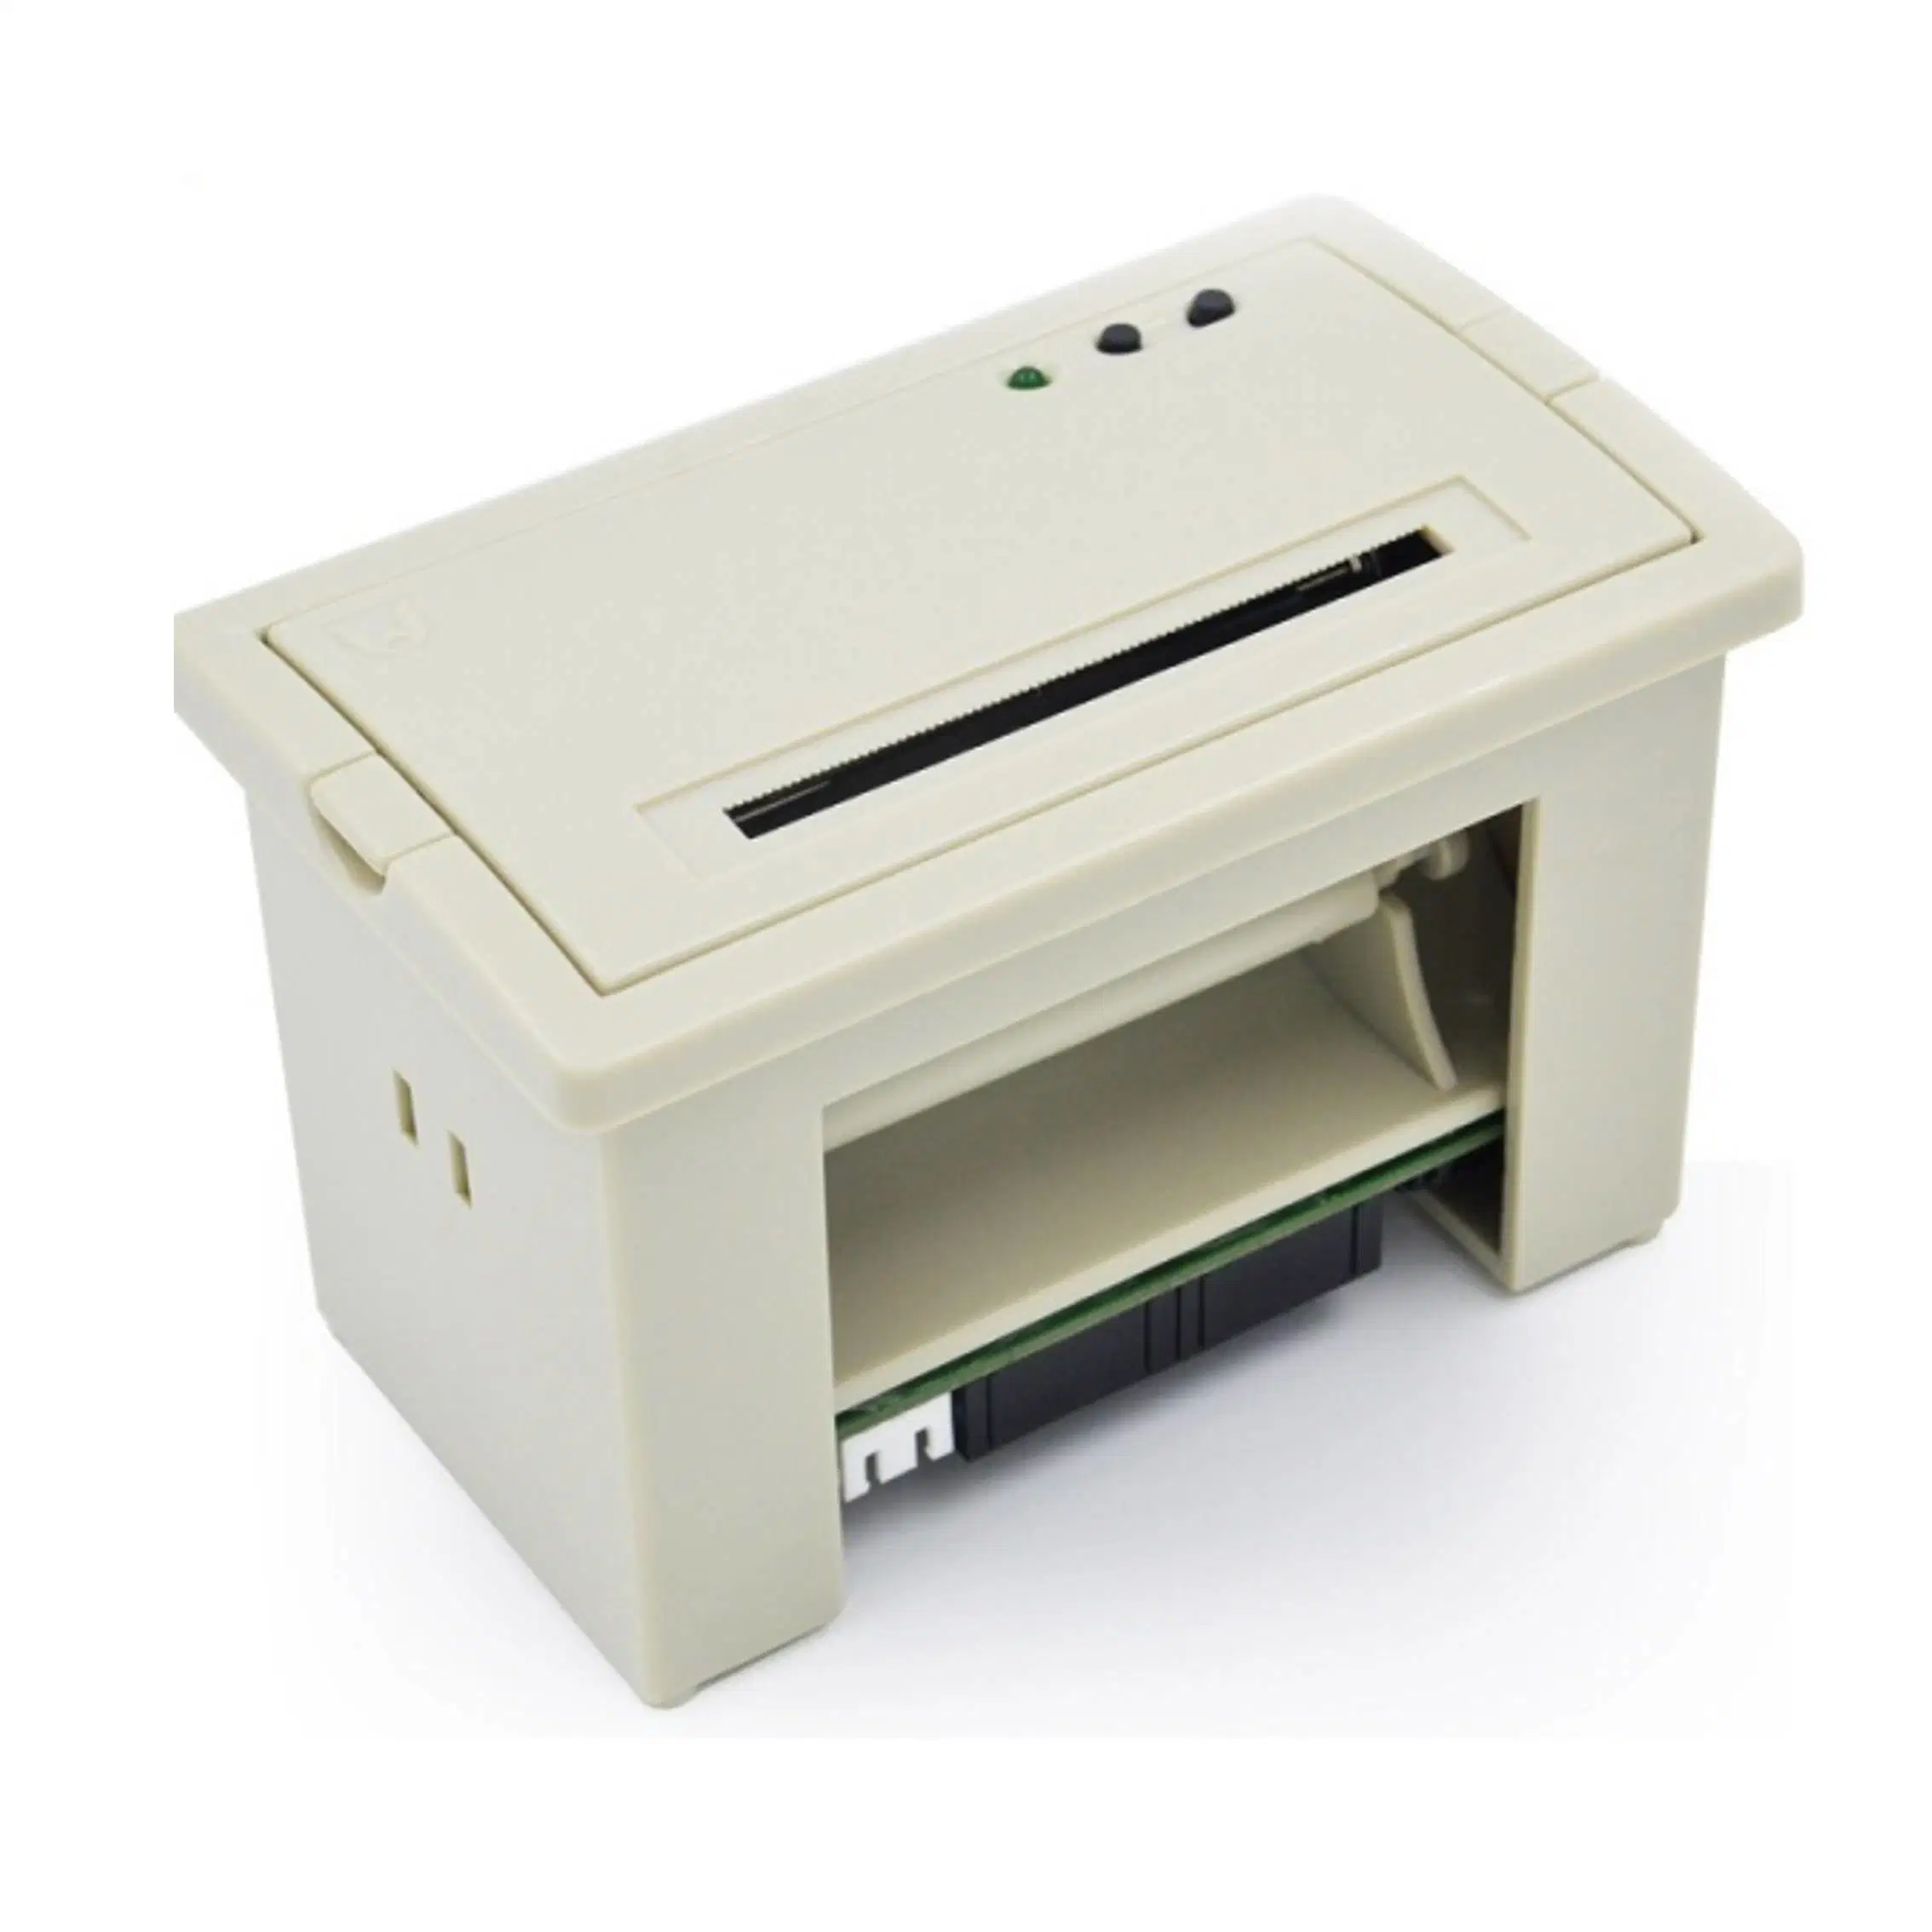 57мм Wh-A5 Micro DOT Matrix получения оплаты штрих-кодов принтер с параллельным интерфейсом Serial RS-232